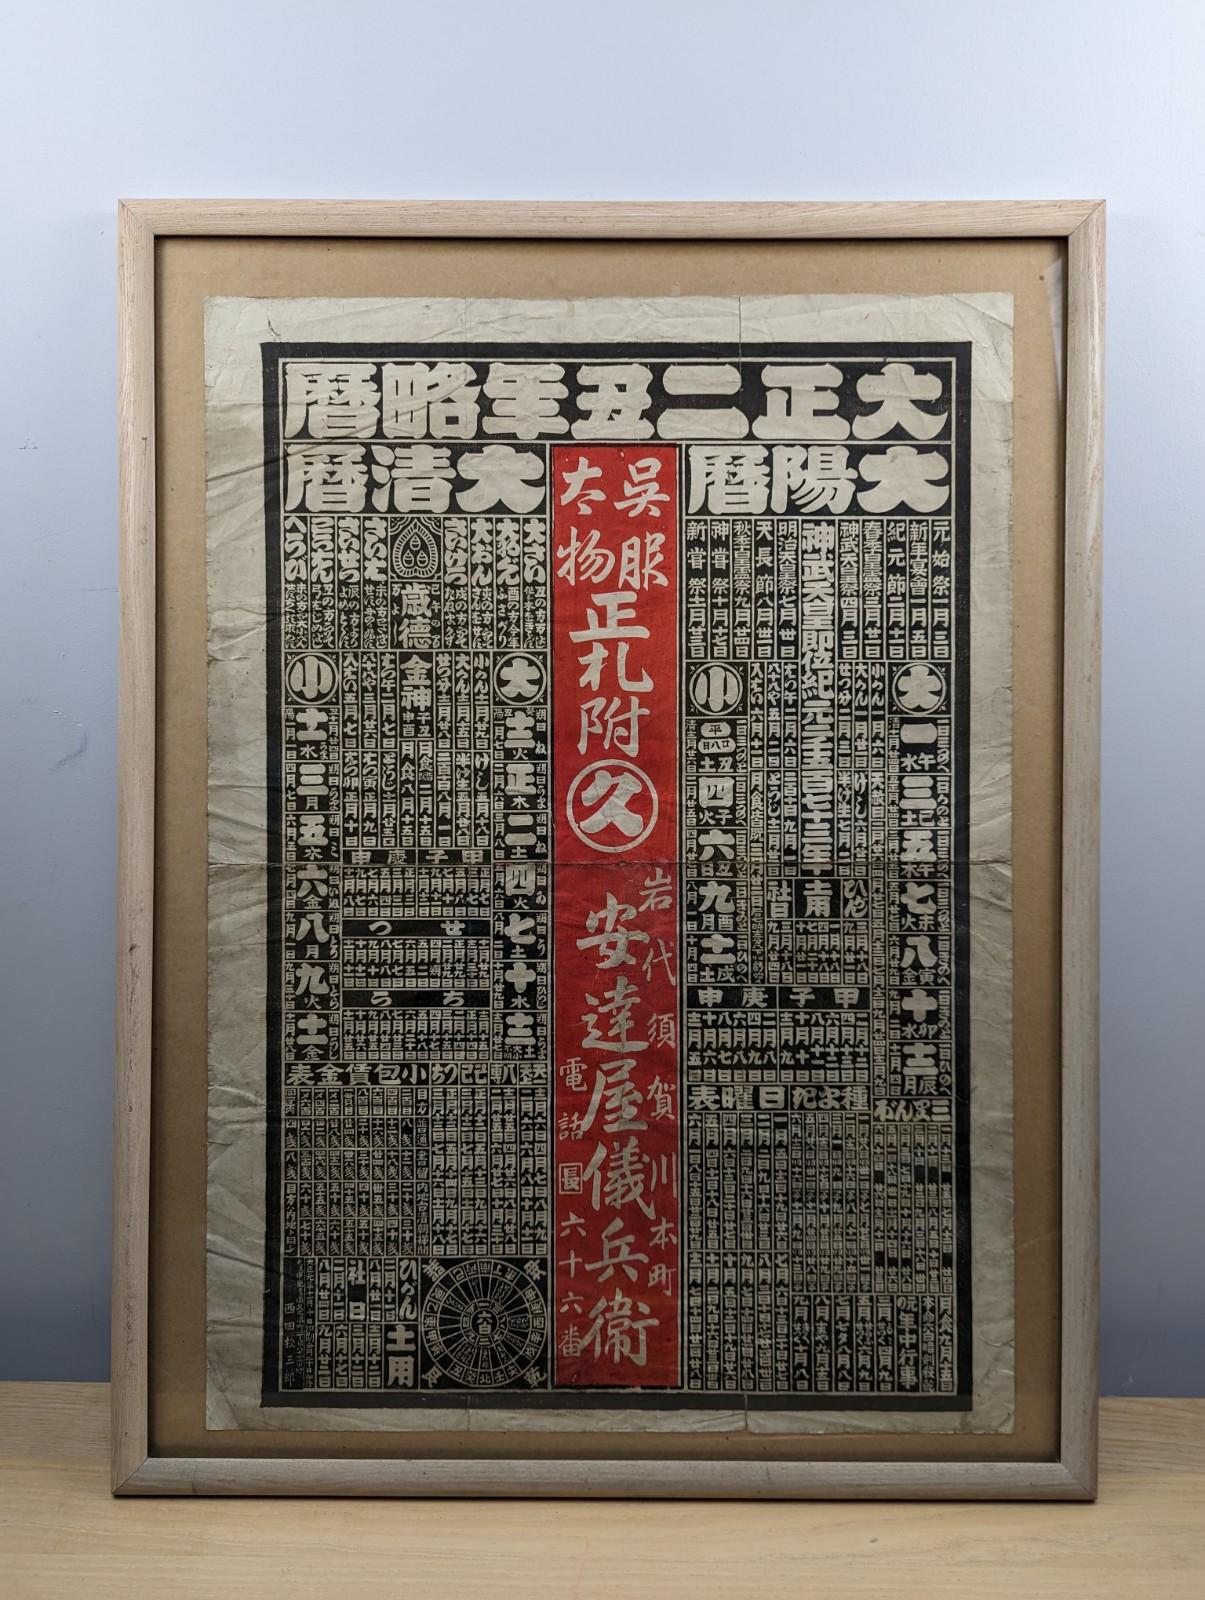 Calendrier publicitaire japonais imprimé en bloc (1912) provenant d'un magasin de kimonos.

L'article est fourni sans cadre